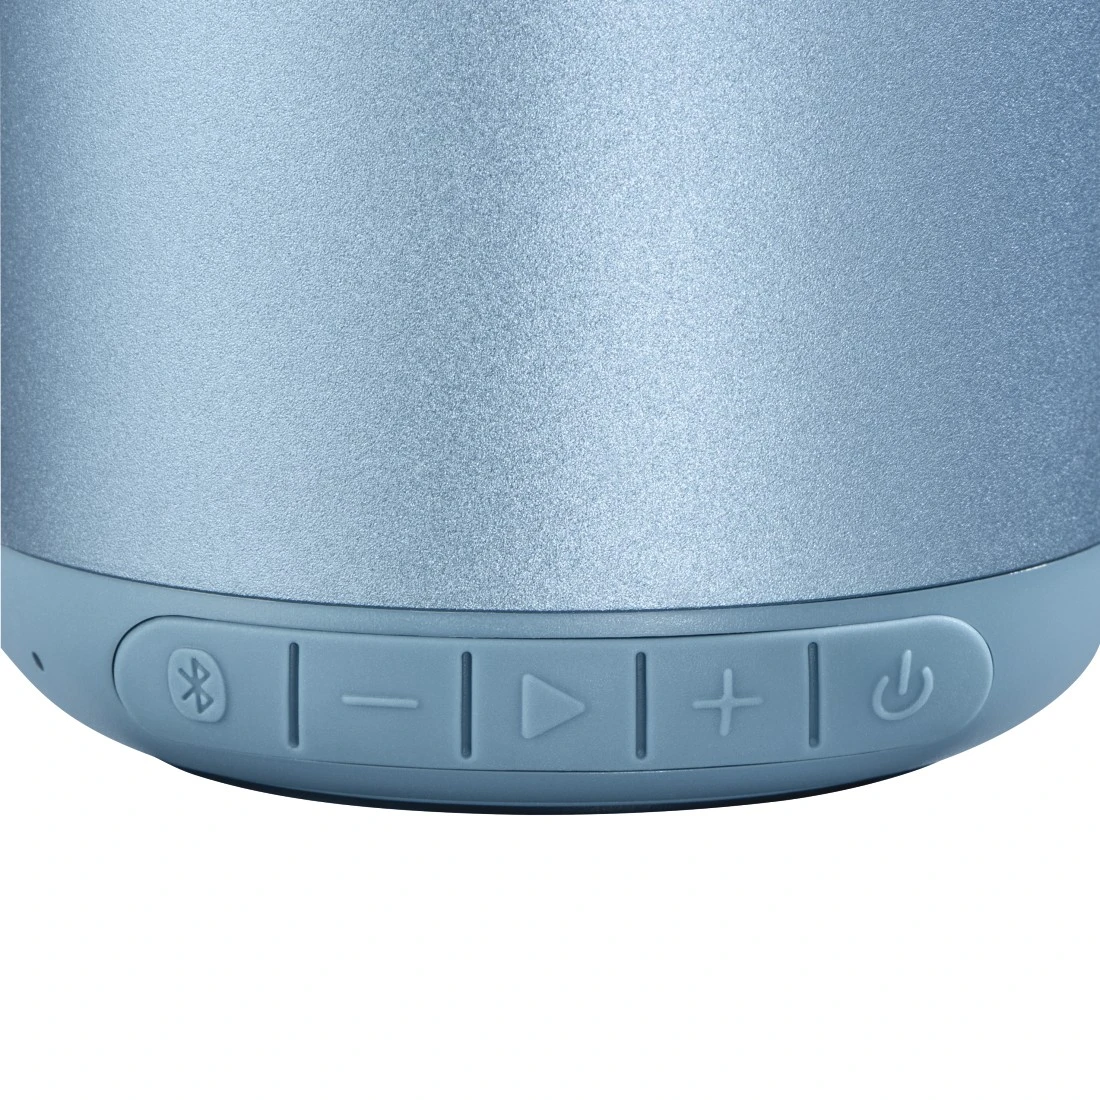 Hama Bluetooth Drum 2.0 Loudspeaker, 3.5W